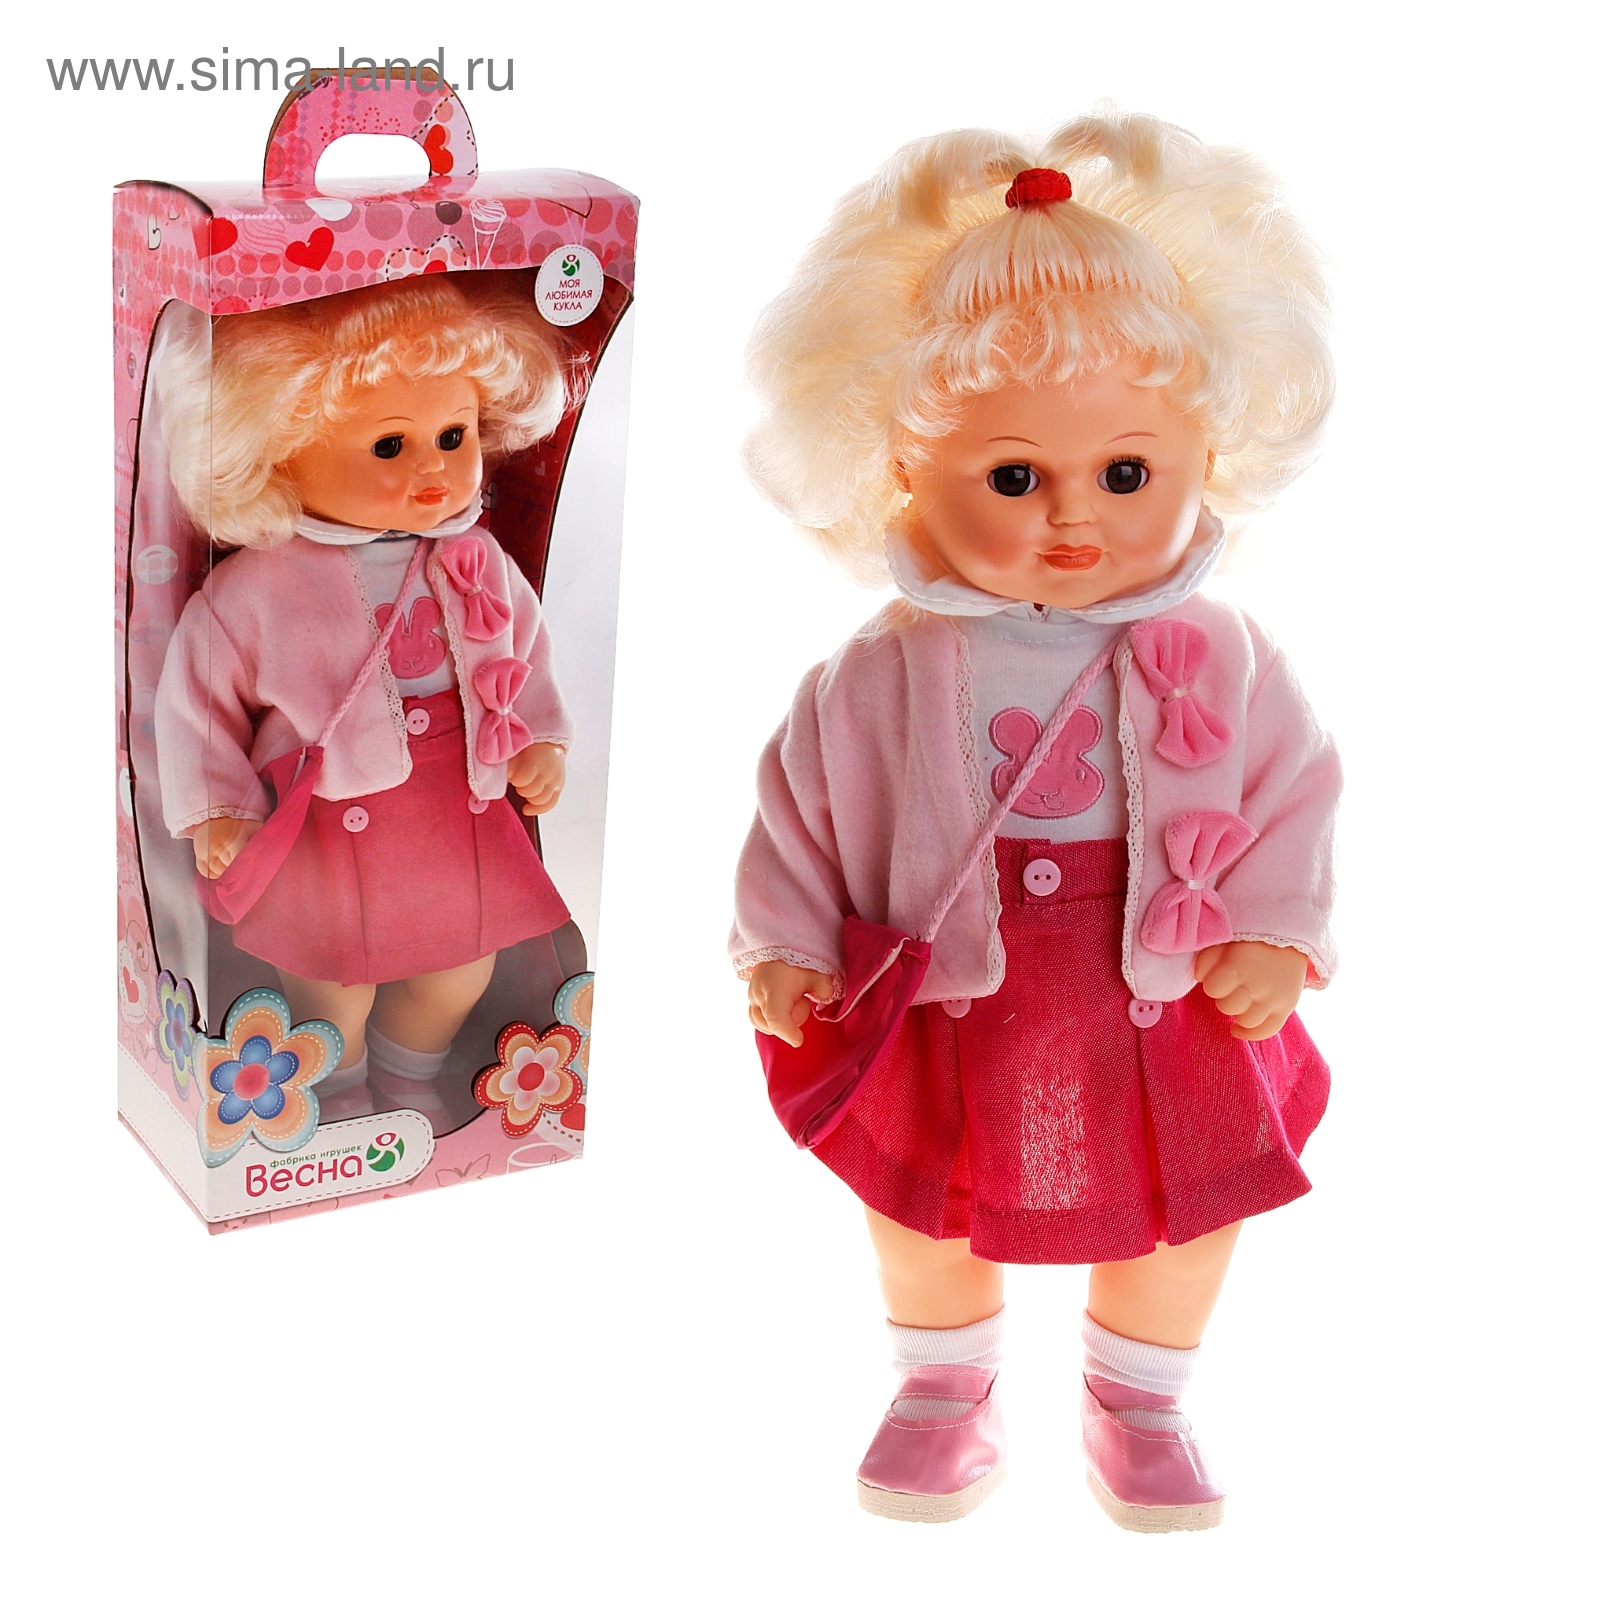 Купить куклу оптом. Куклы белорусского производства.